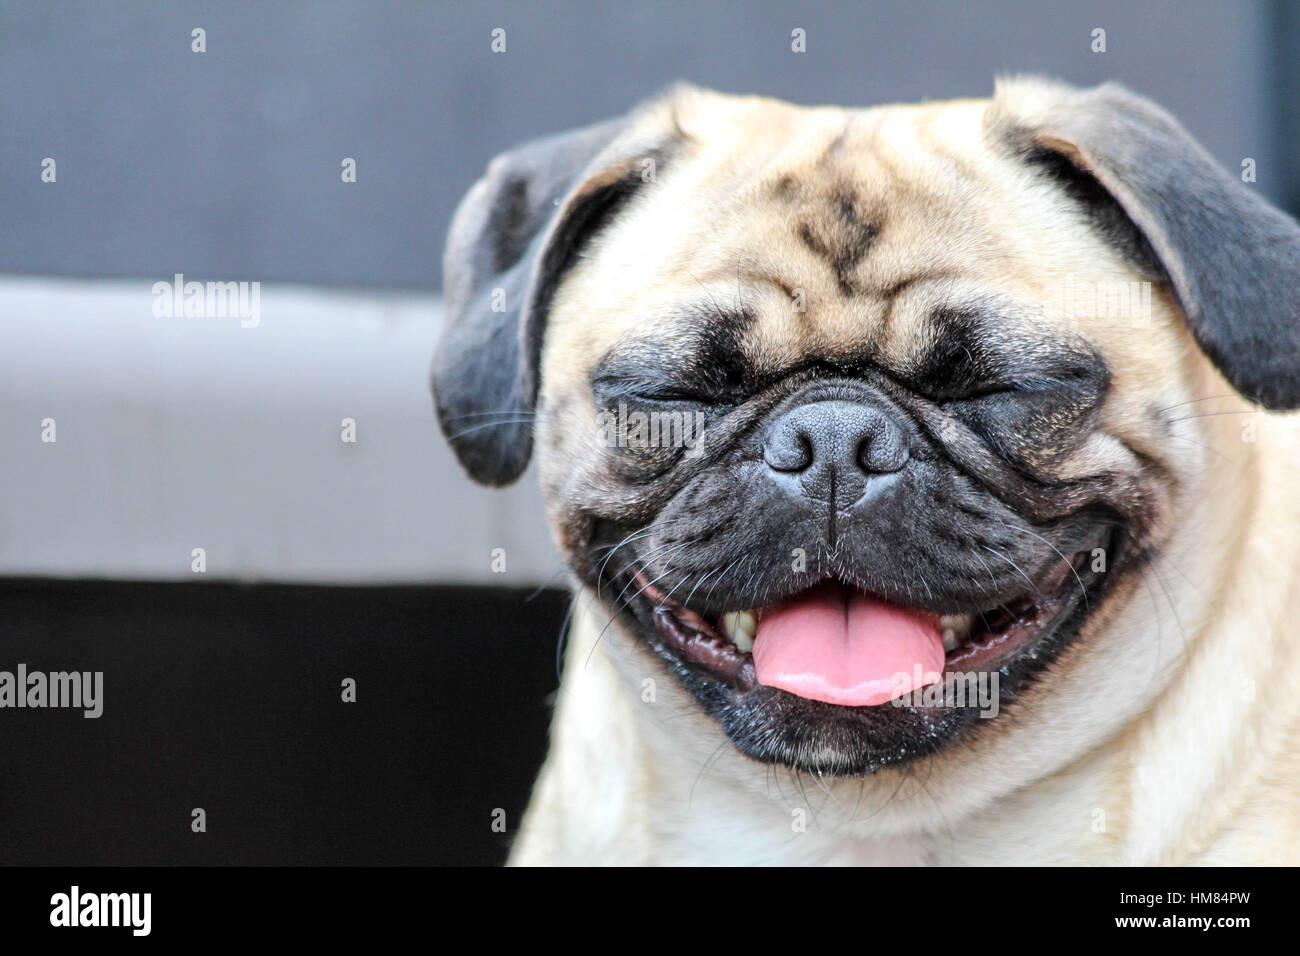 Super süße Mops Hund geben ihr schönstes Lächeln für die Kamera  Stockfotografie - Alamy